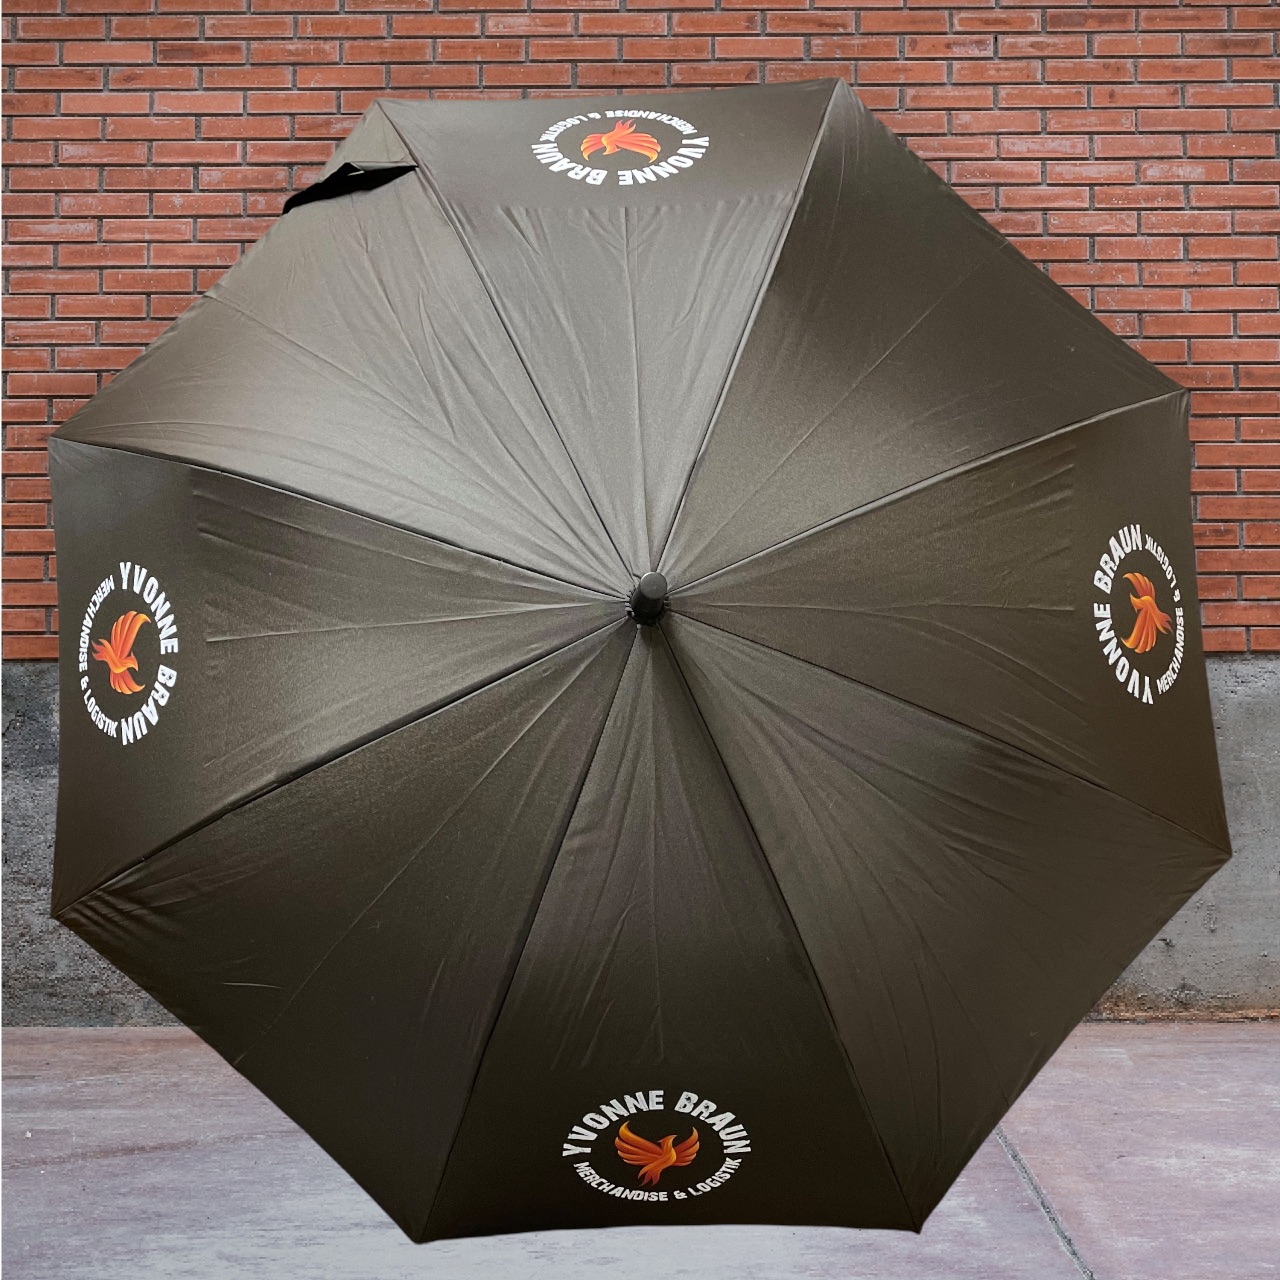 Regenschirm mit Logo, Bild oder Text. Gestalte deinen persönlichen Regenschirm